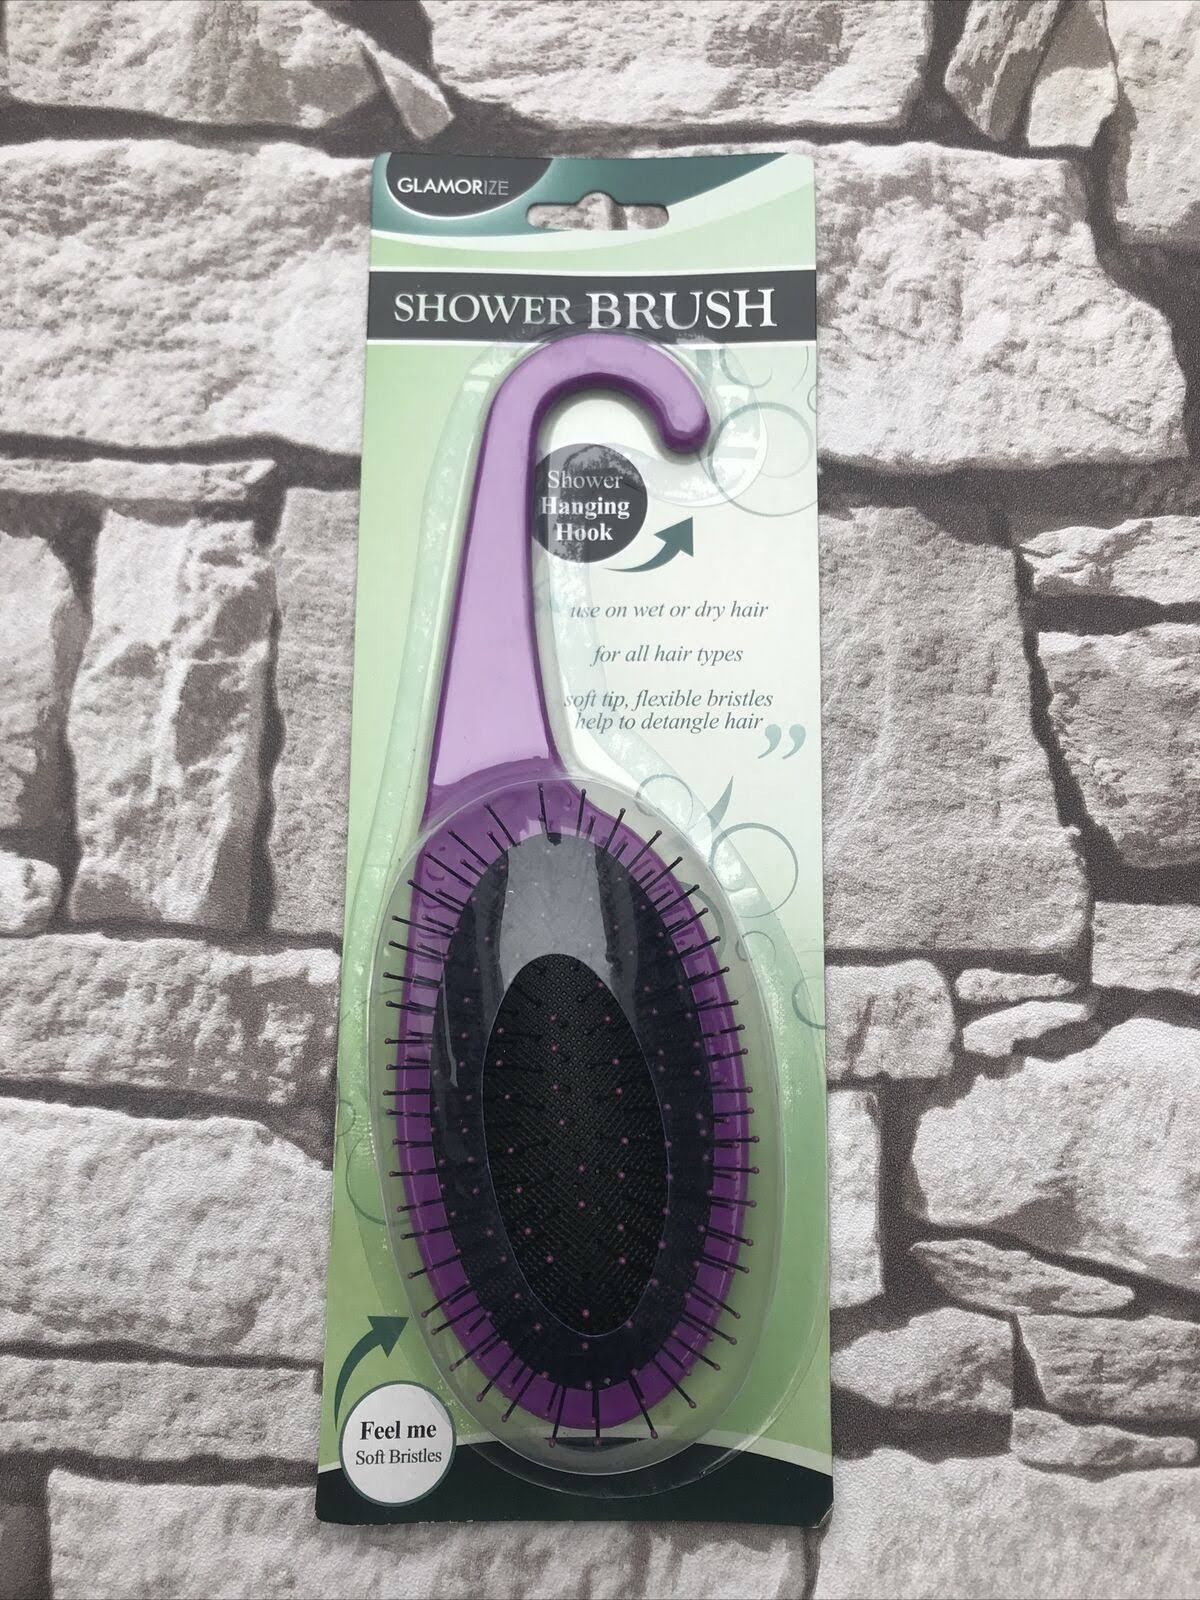 Glamorize Shower Brush - with Shower Handing Hook Brand